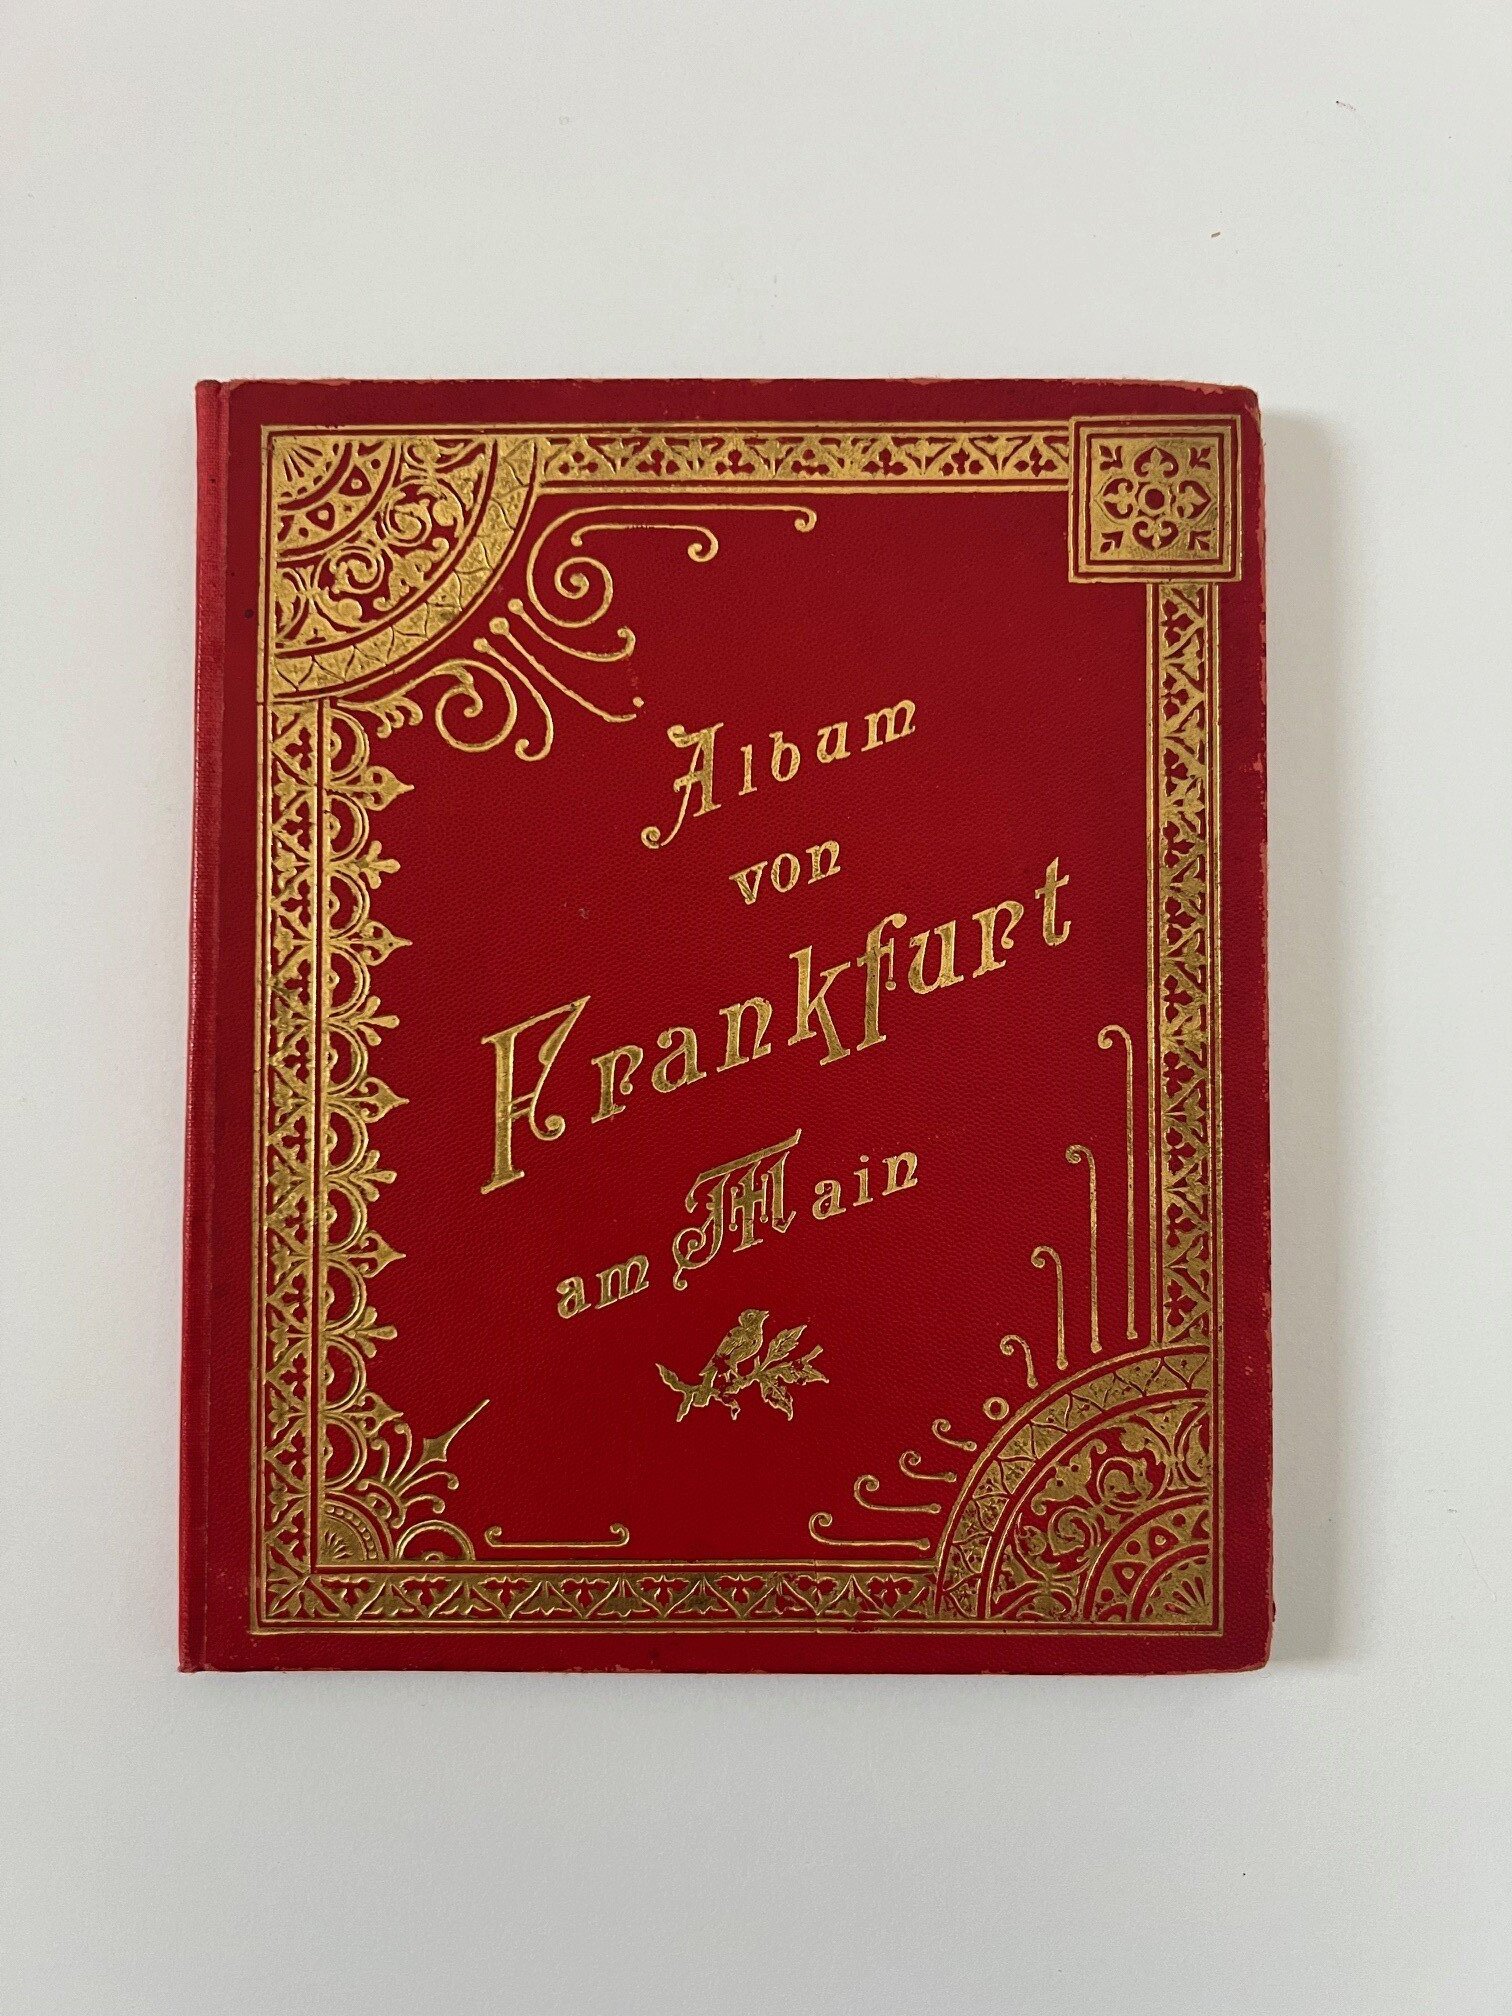 Verlag Gerhard Blümlein & Co, Album von Frankfurt am Main, 33 Lithographien als Leporello, ca. 1900. (Taunus-Rhein-Main - Regionalgeschichtliche Sammlung Dr. Stefan Naas CC BY-NC-SA)